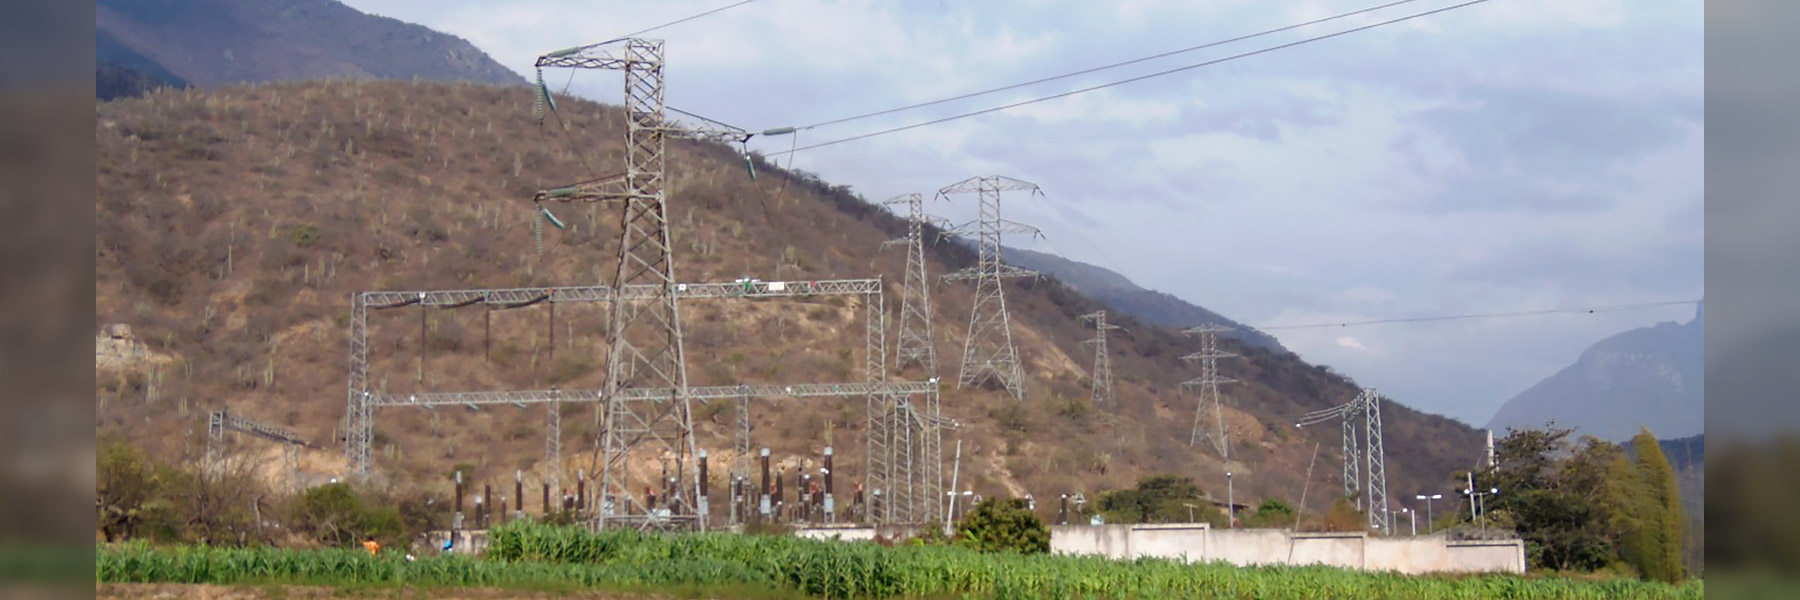 proyecto-SE-La-Granja-en-220-kV-Rio-tinto Pepsa Tecsult